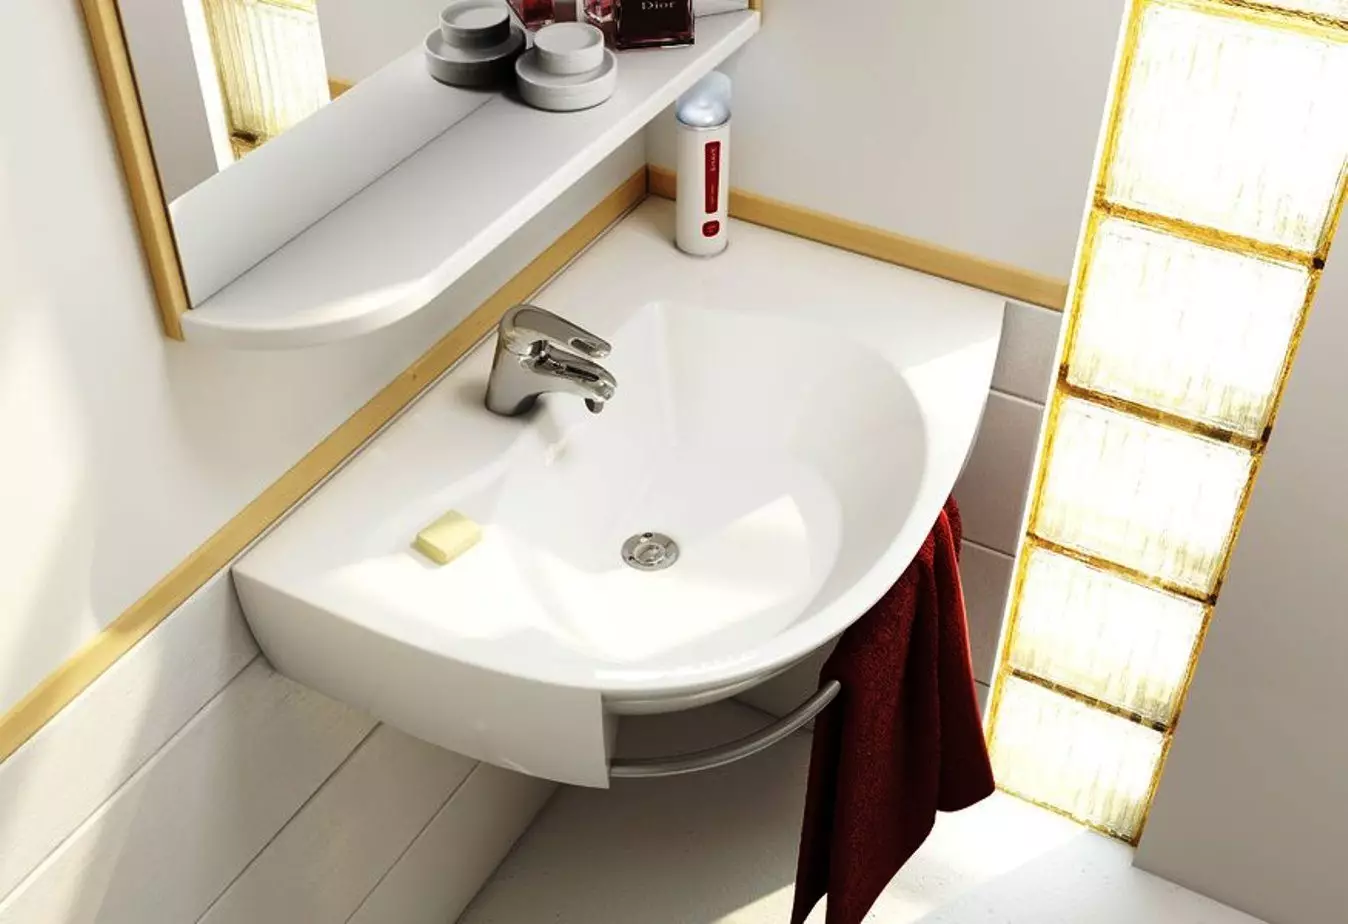 Suspenderad diskbänk i badrummet: Monterade tvättställ 50-60 cm med konsol och tvättning utan en skärare 55-80 cm, andra modeller 21424_59